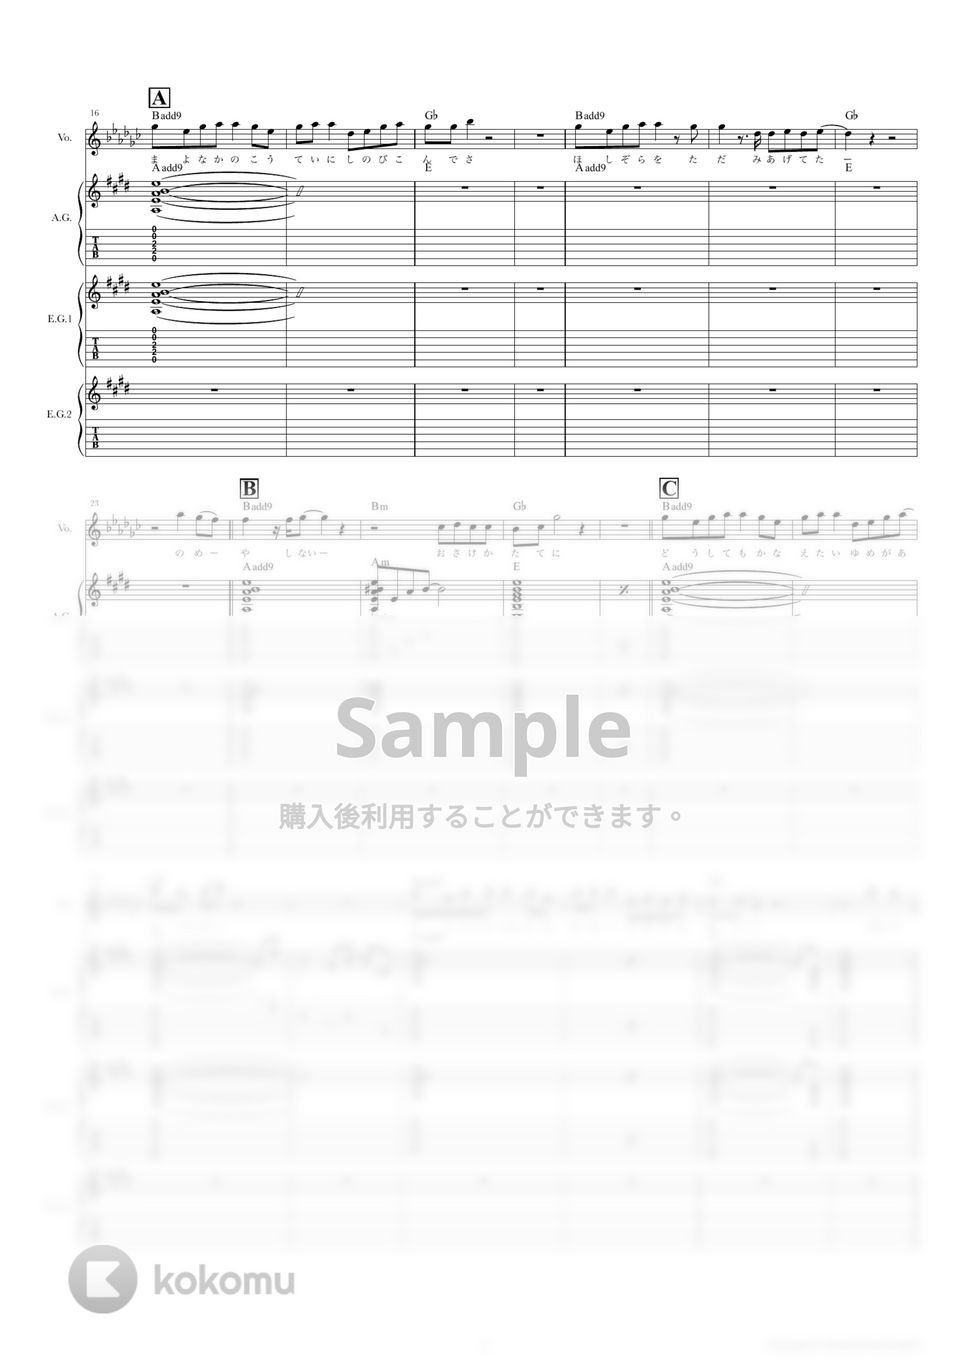 きのこ帝国 - 桜が咲く前に (ギタースコア・歌詞・コード付き) by TRIAD GUITAR SCHOOL